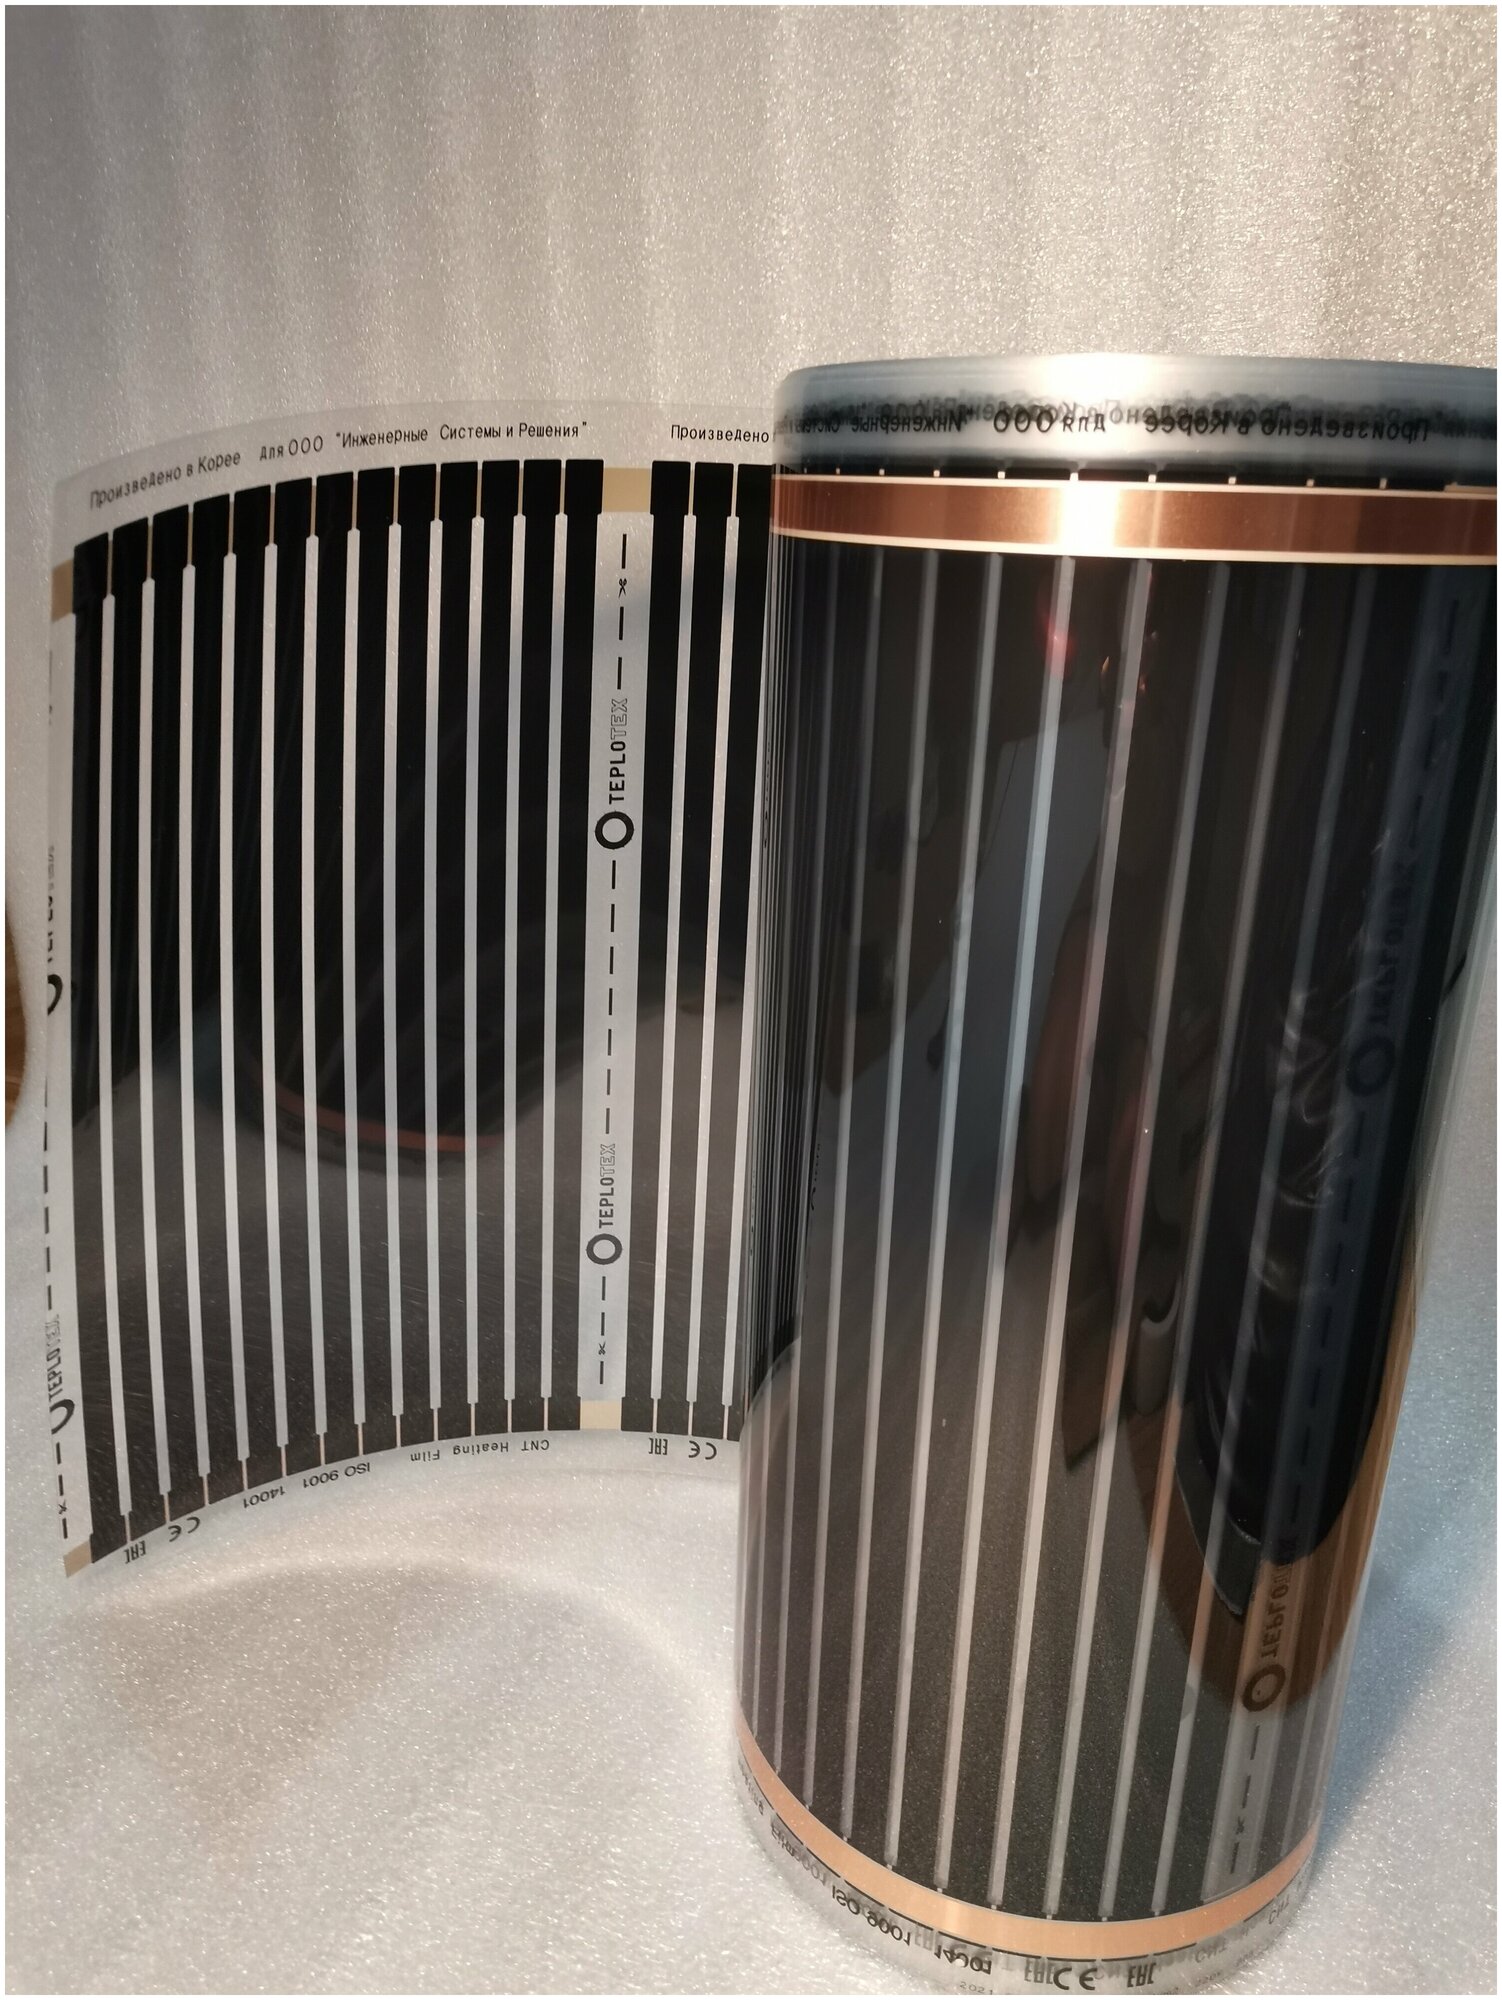 Теплый пол готовый комплект: инфракрасная пленка 0,5м на 0,25м, терморегулятор, комплектующие - фотография № 3